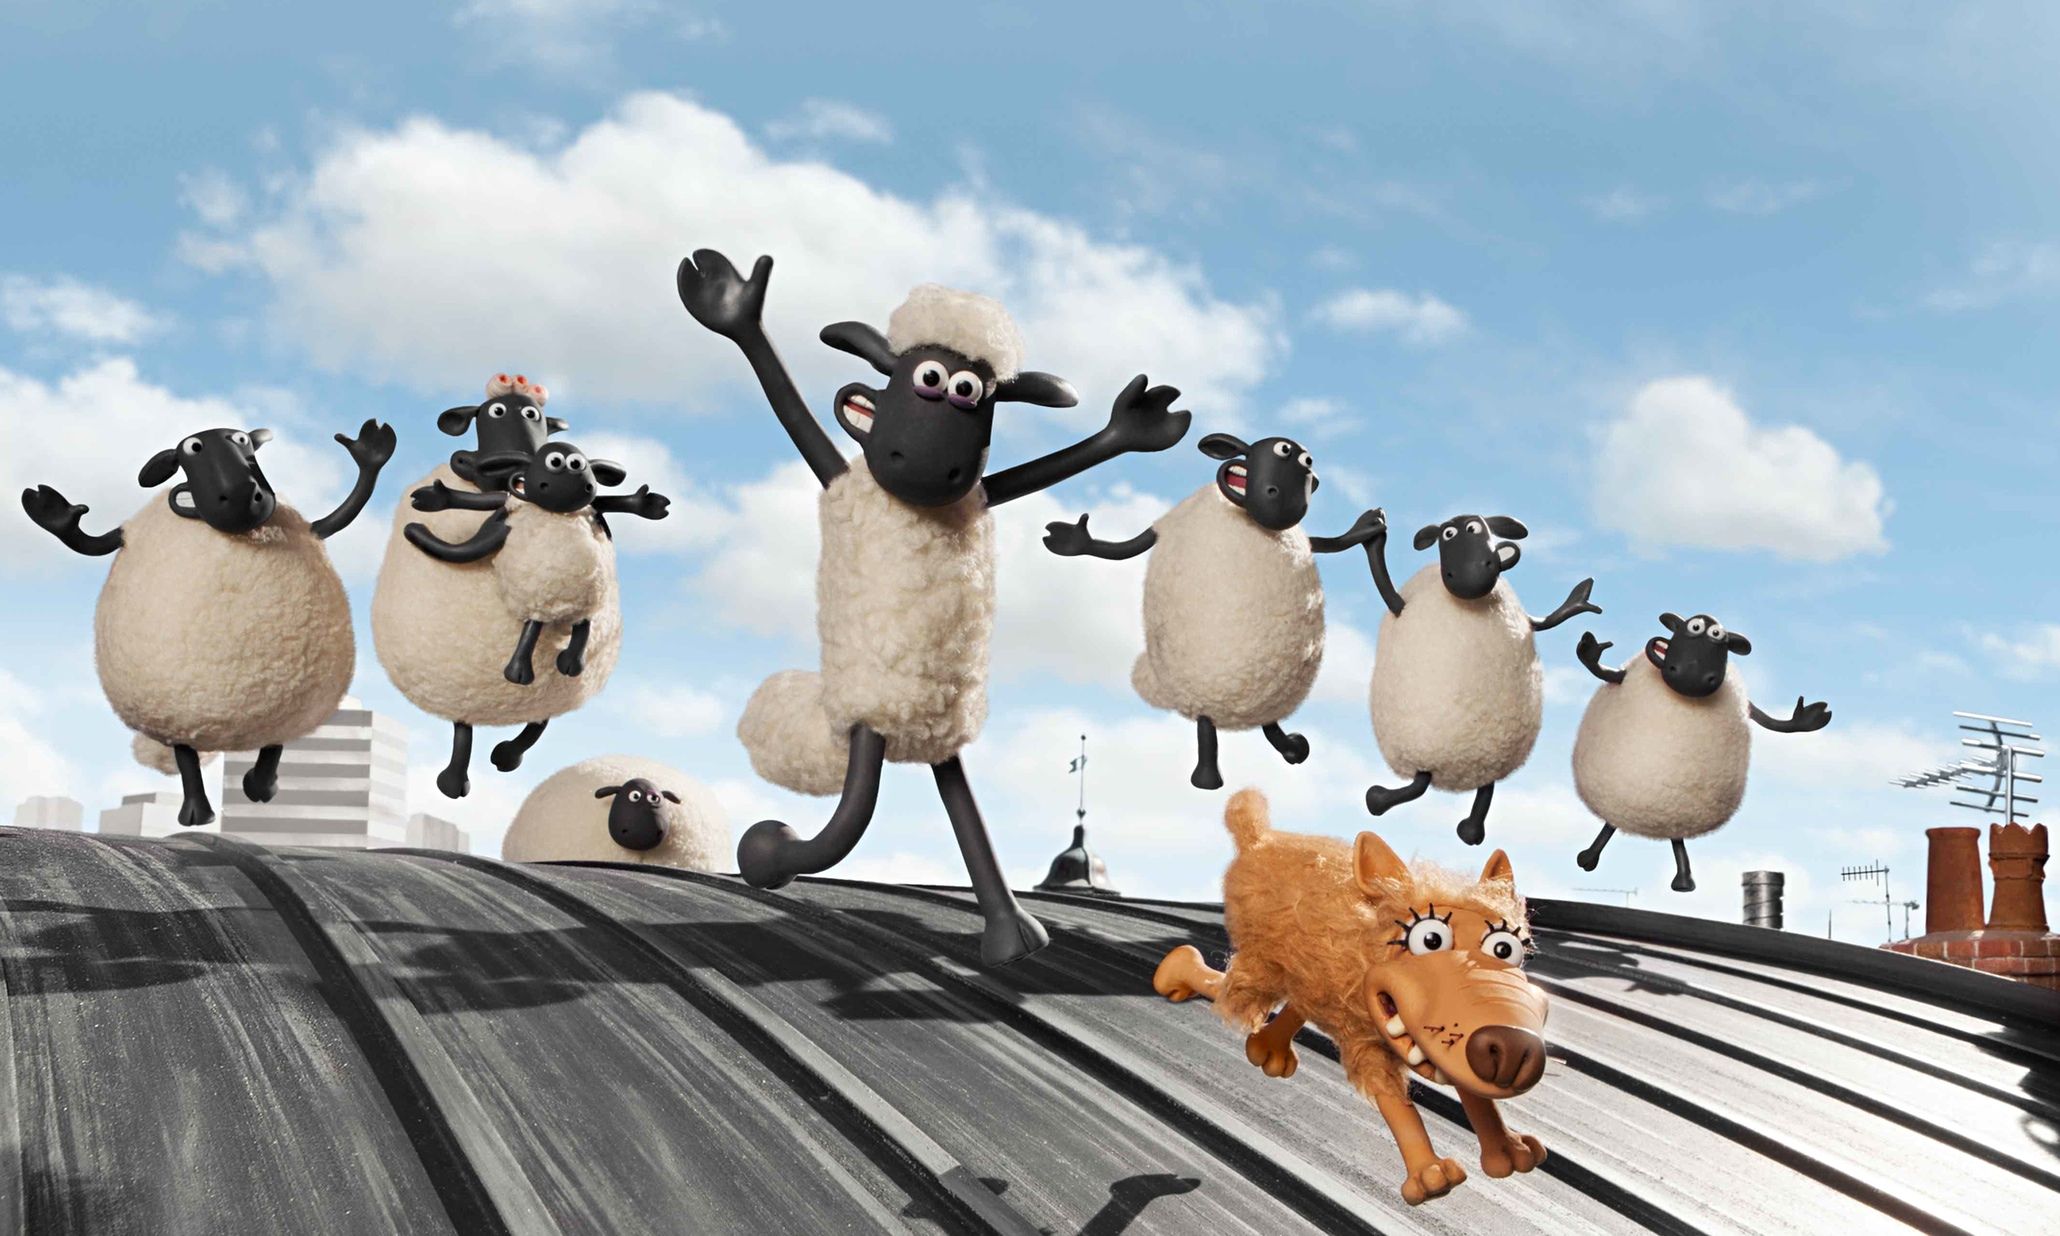 Shaun and multiple sheep celebrating 